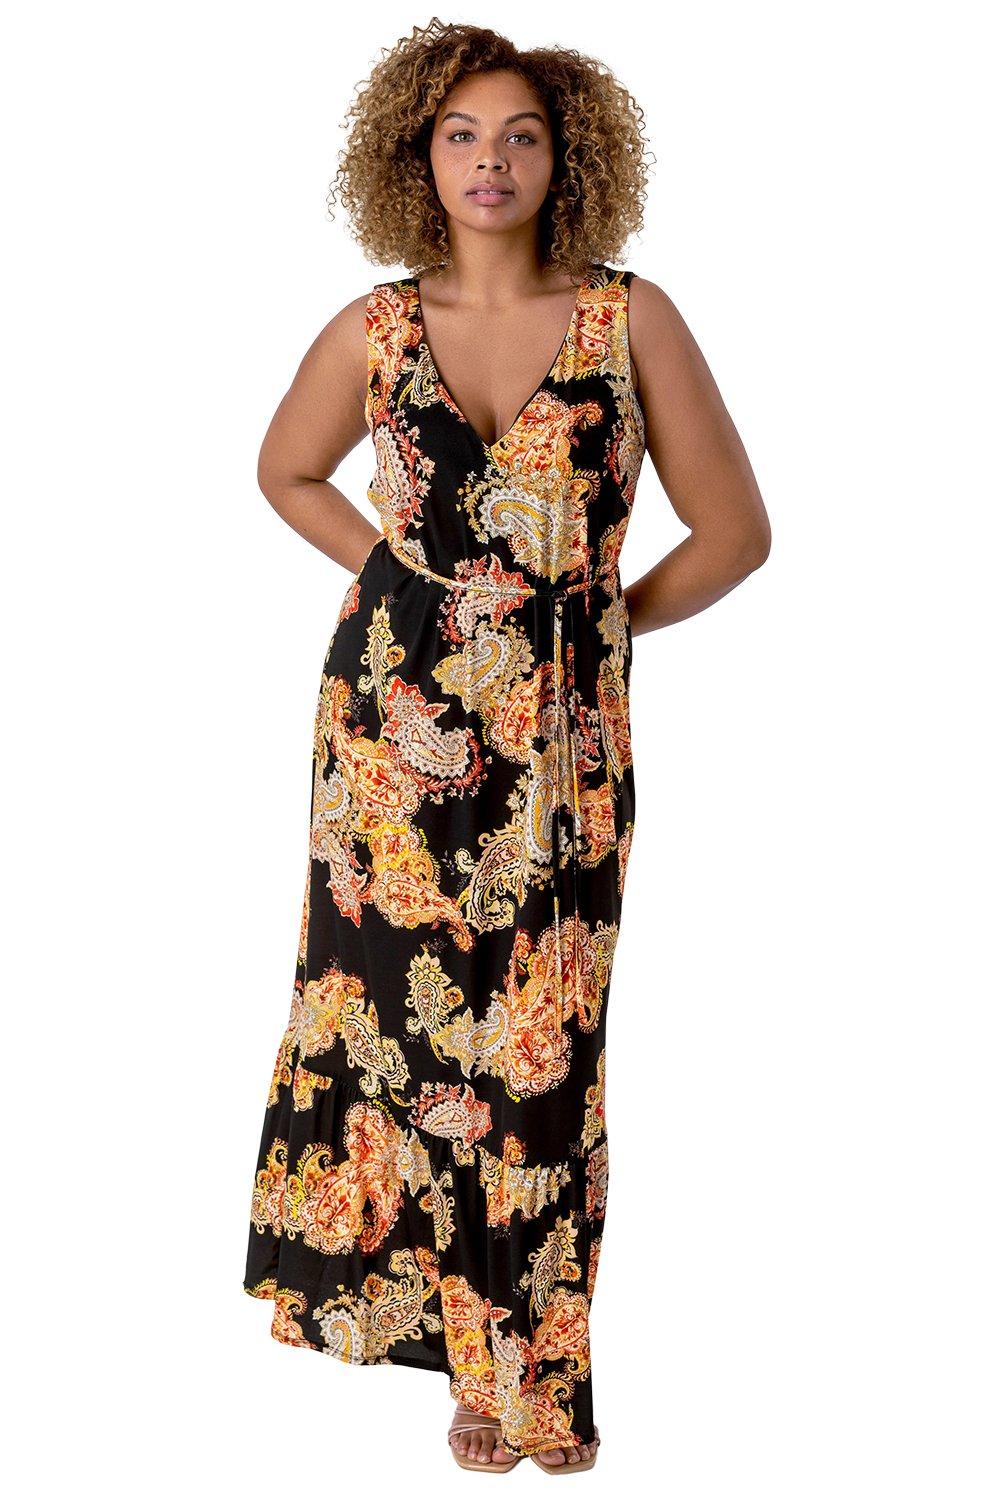 Платье макси с принтом пейсли Curve Roman, оранжевый женское платье с принтом пейсли летнее свободное мини платье с длинным рукавом и v образным вырезом 2021